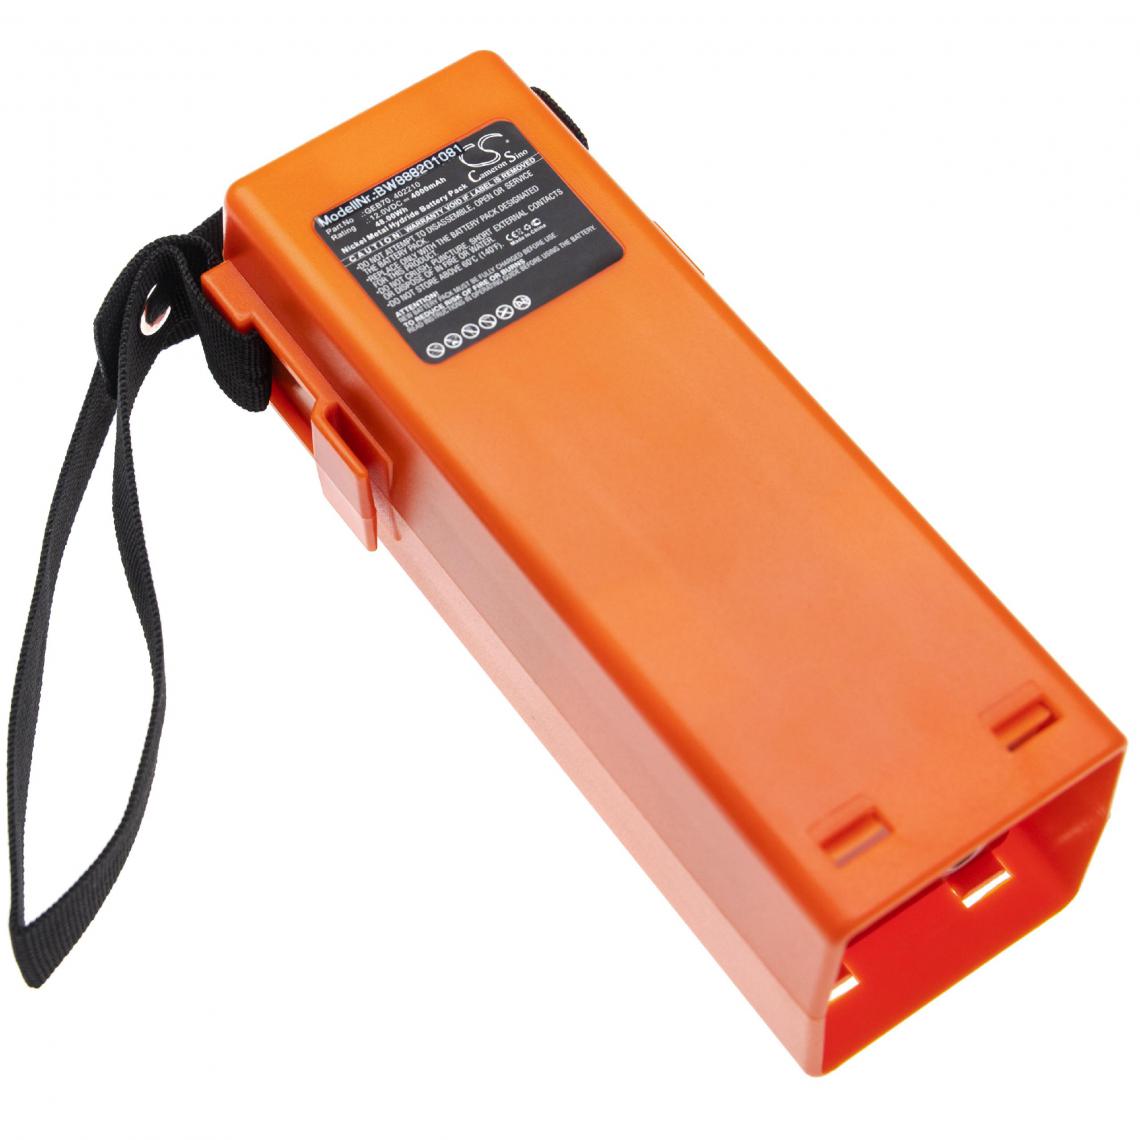 Vhbw - vhbw Batterie compatible avec Leica station totale TCA1800, TPS100, station totale TPS100 télémètre laser outil de mesure (4000mAh 12V NiMH) - Piles rechargeables